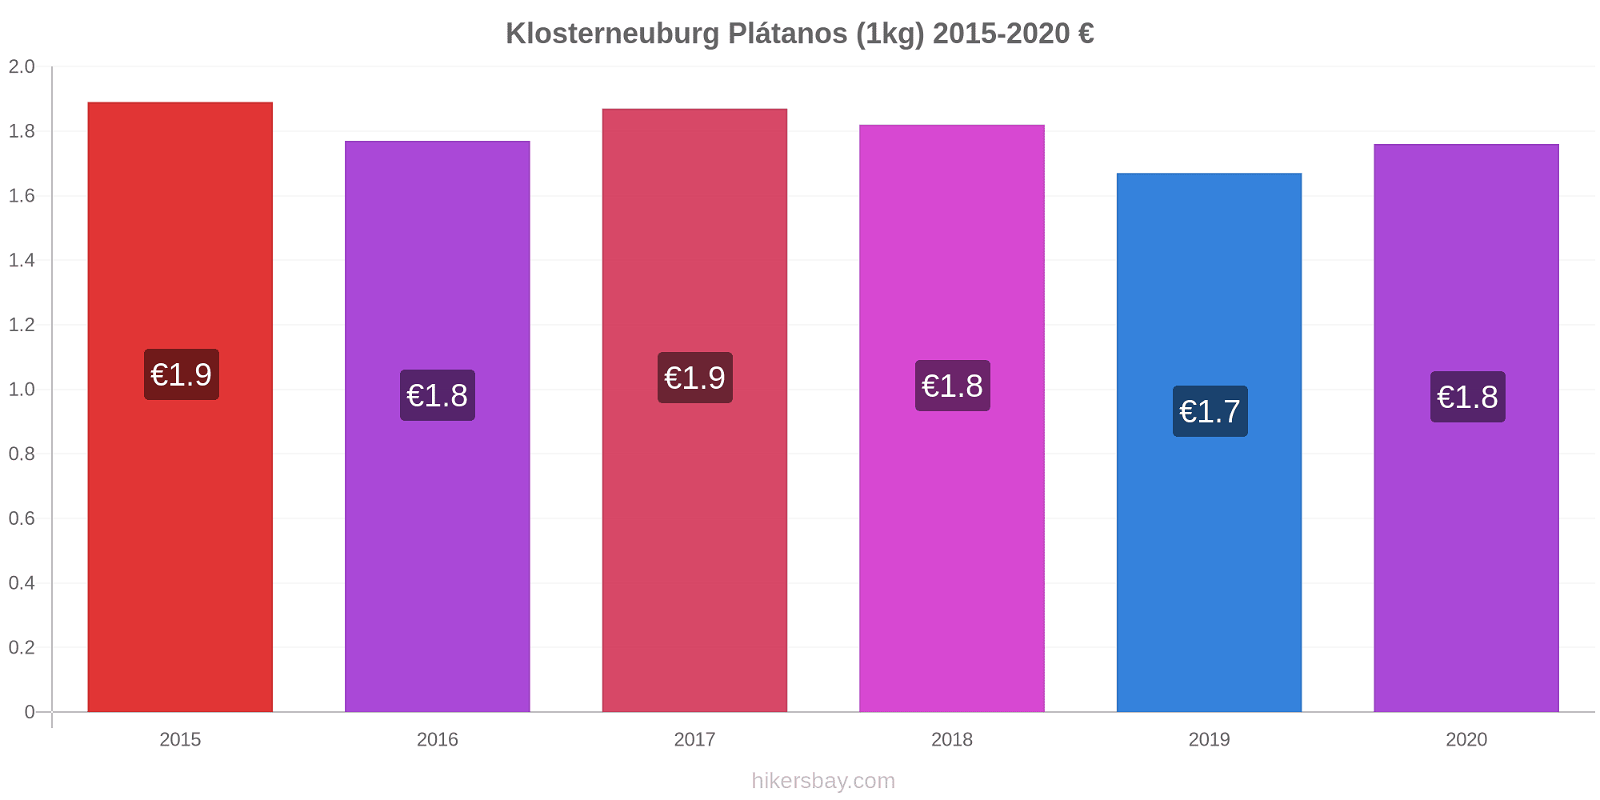 Klosterneuburg cambios de precios Plátano (1kg) hikersbay.com